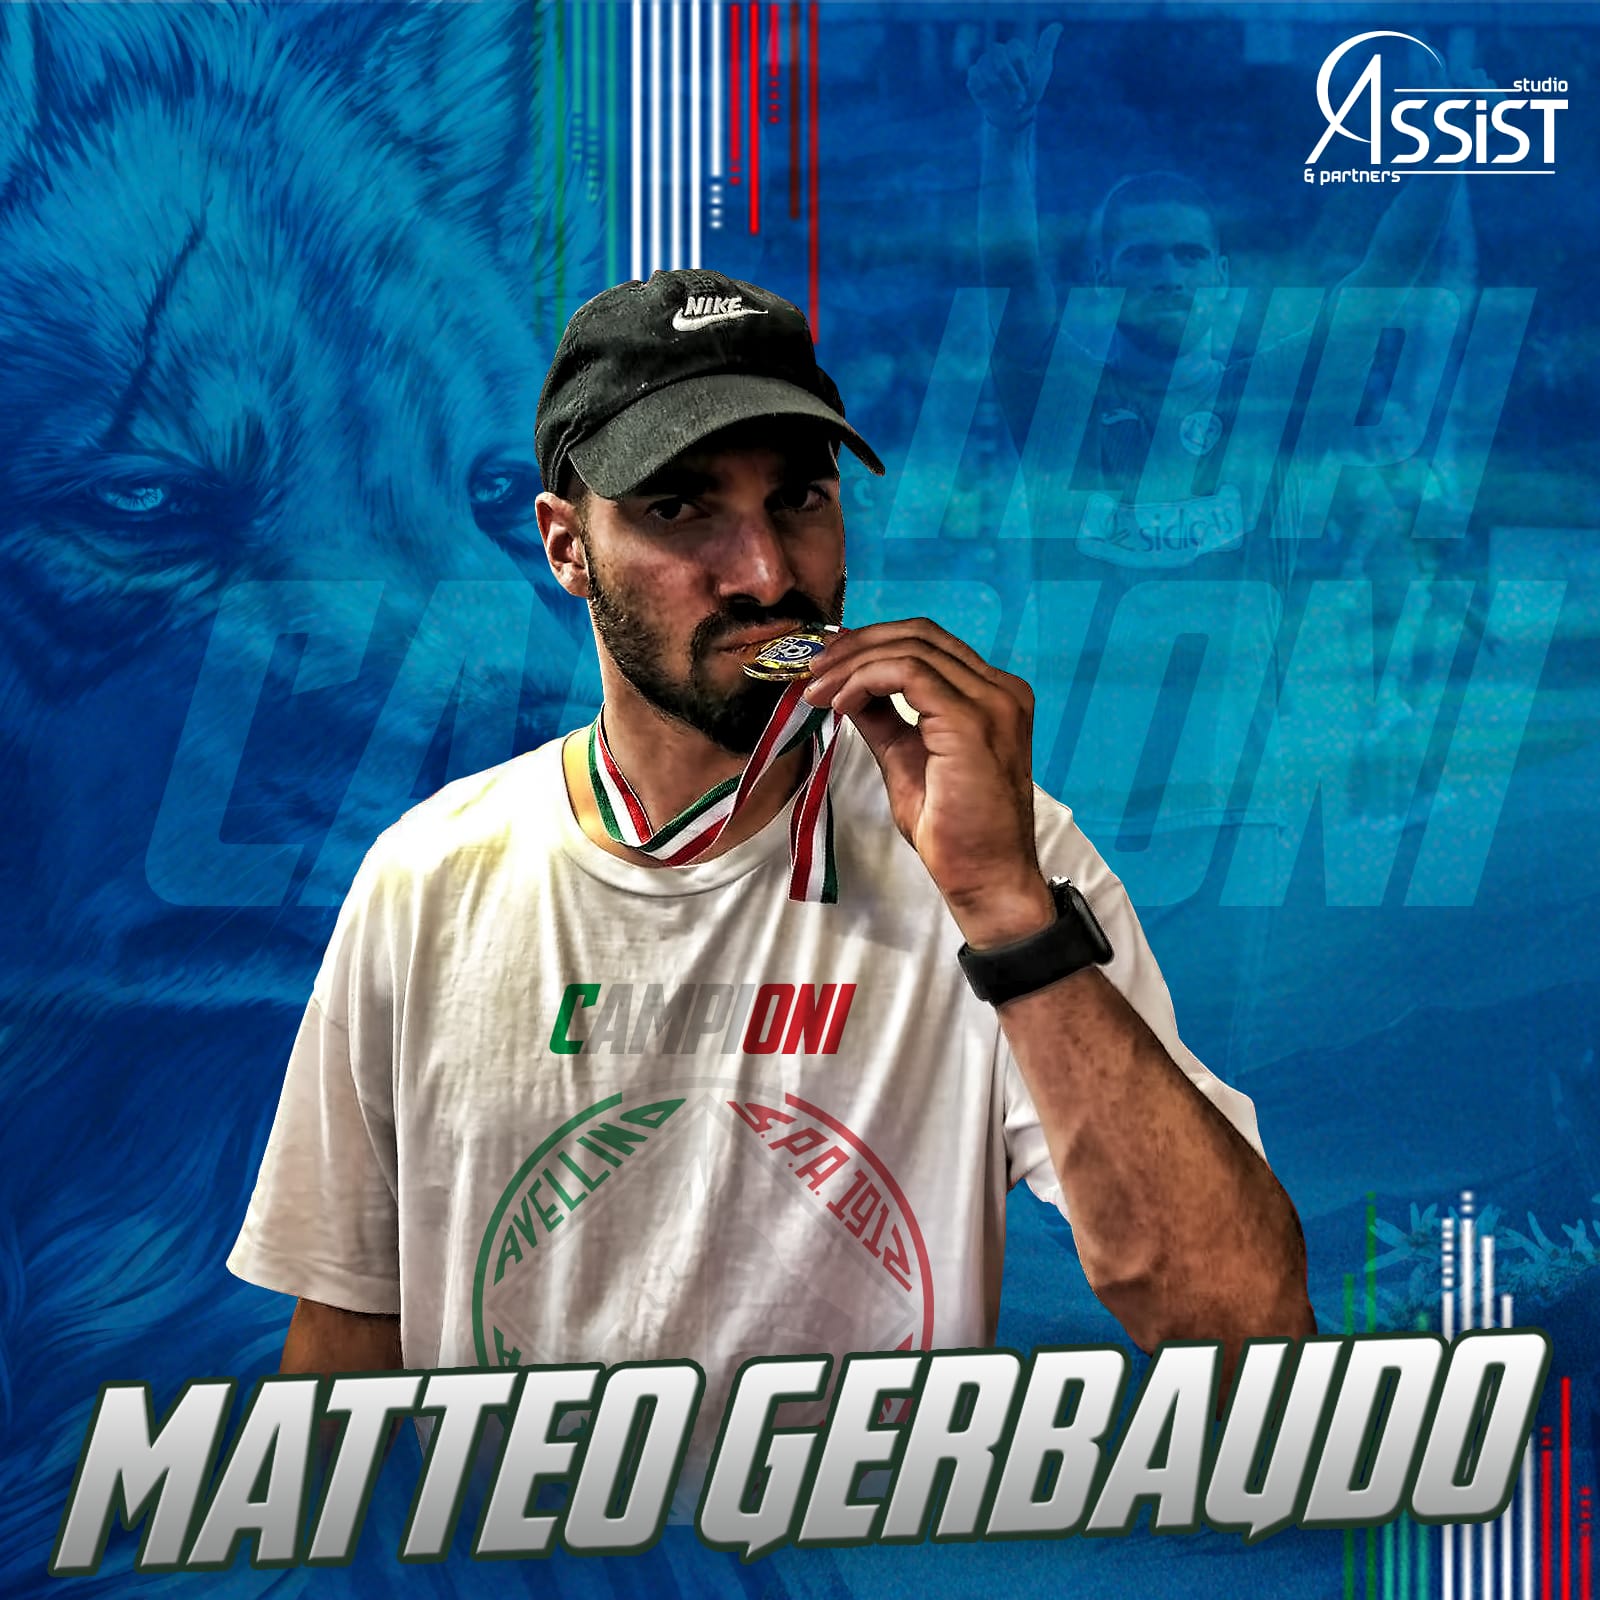 gerbaudo-avellino-campione-serie-d L'Avellino di Matteo Gerbaudo vince lo scudetto di Serie D